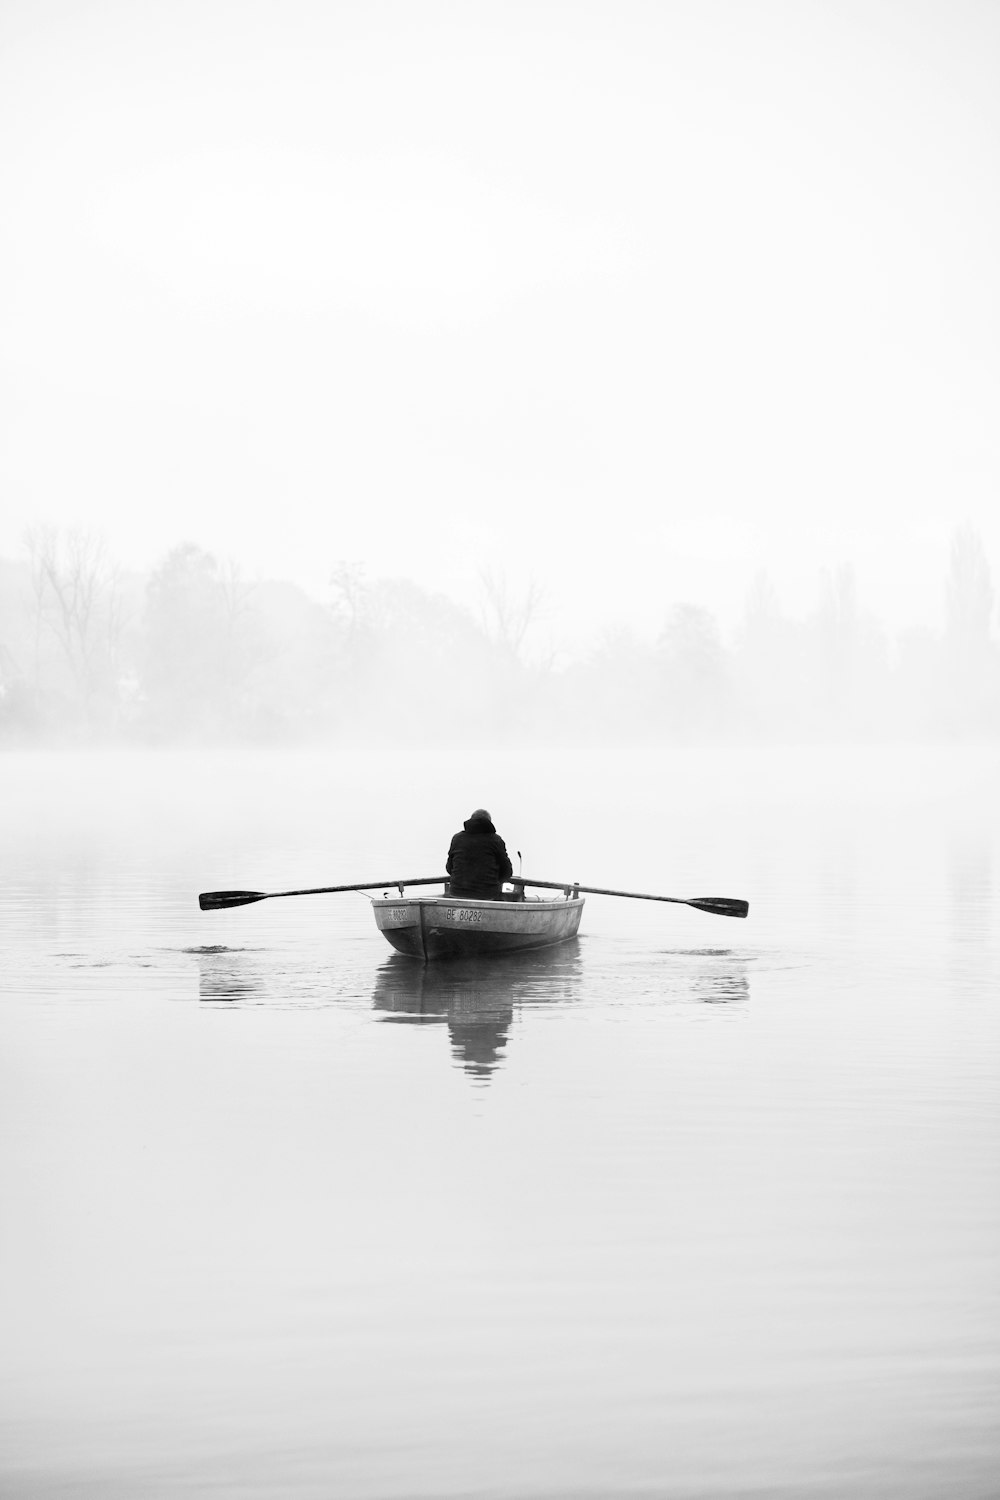 霧の湖で手漕ぎボートに乗っている人